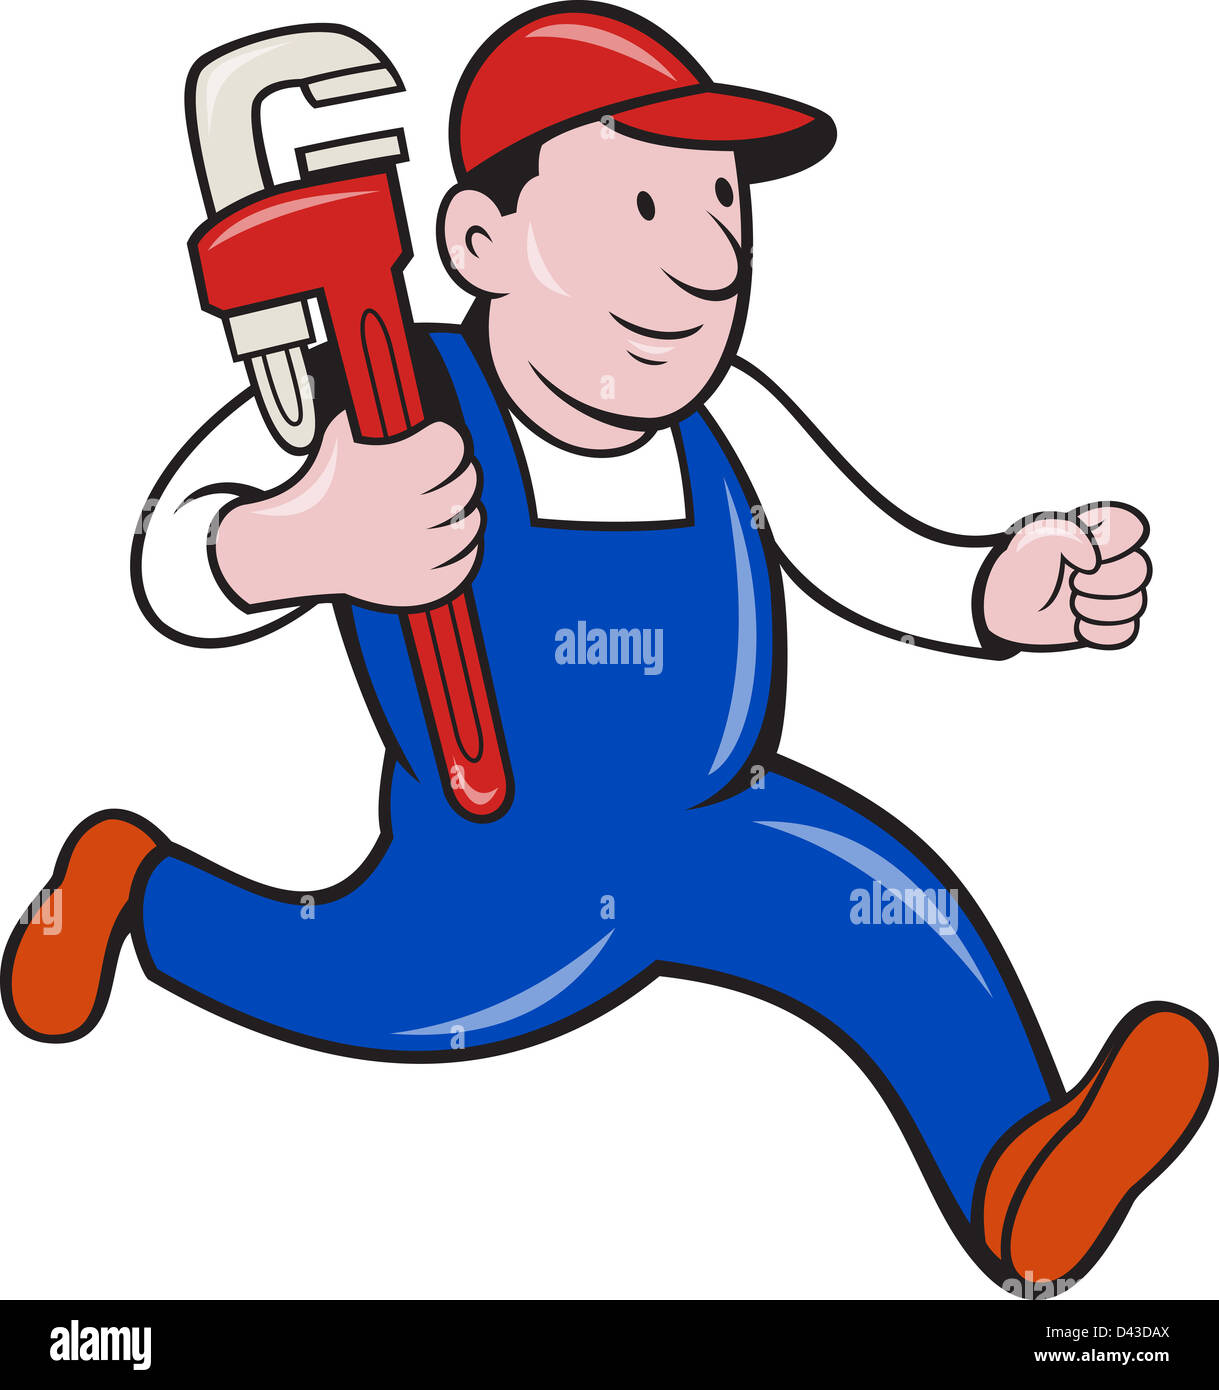 Illustrazione di un idraulico con Monkey Wrench fatto in stile cartoon su sfondo isolato. Foto Stock